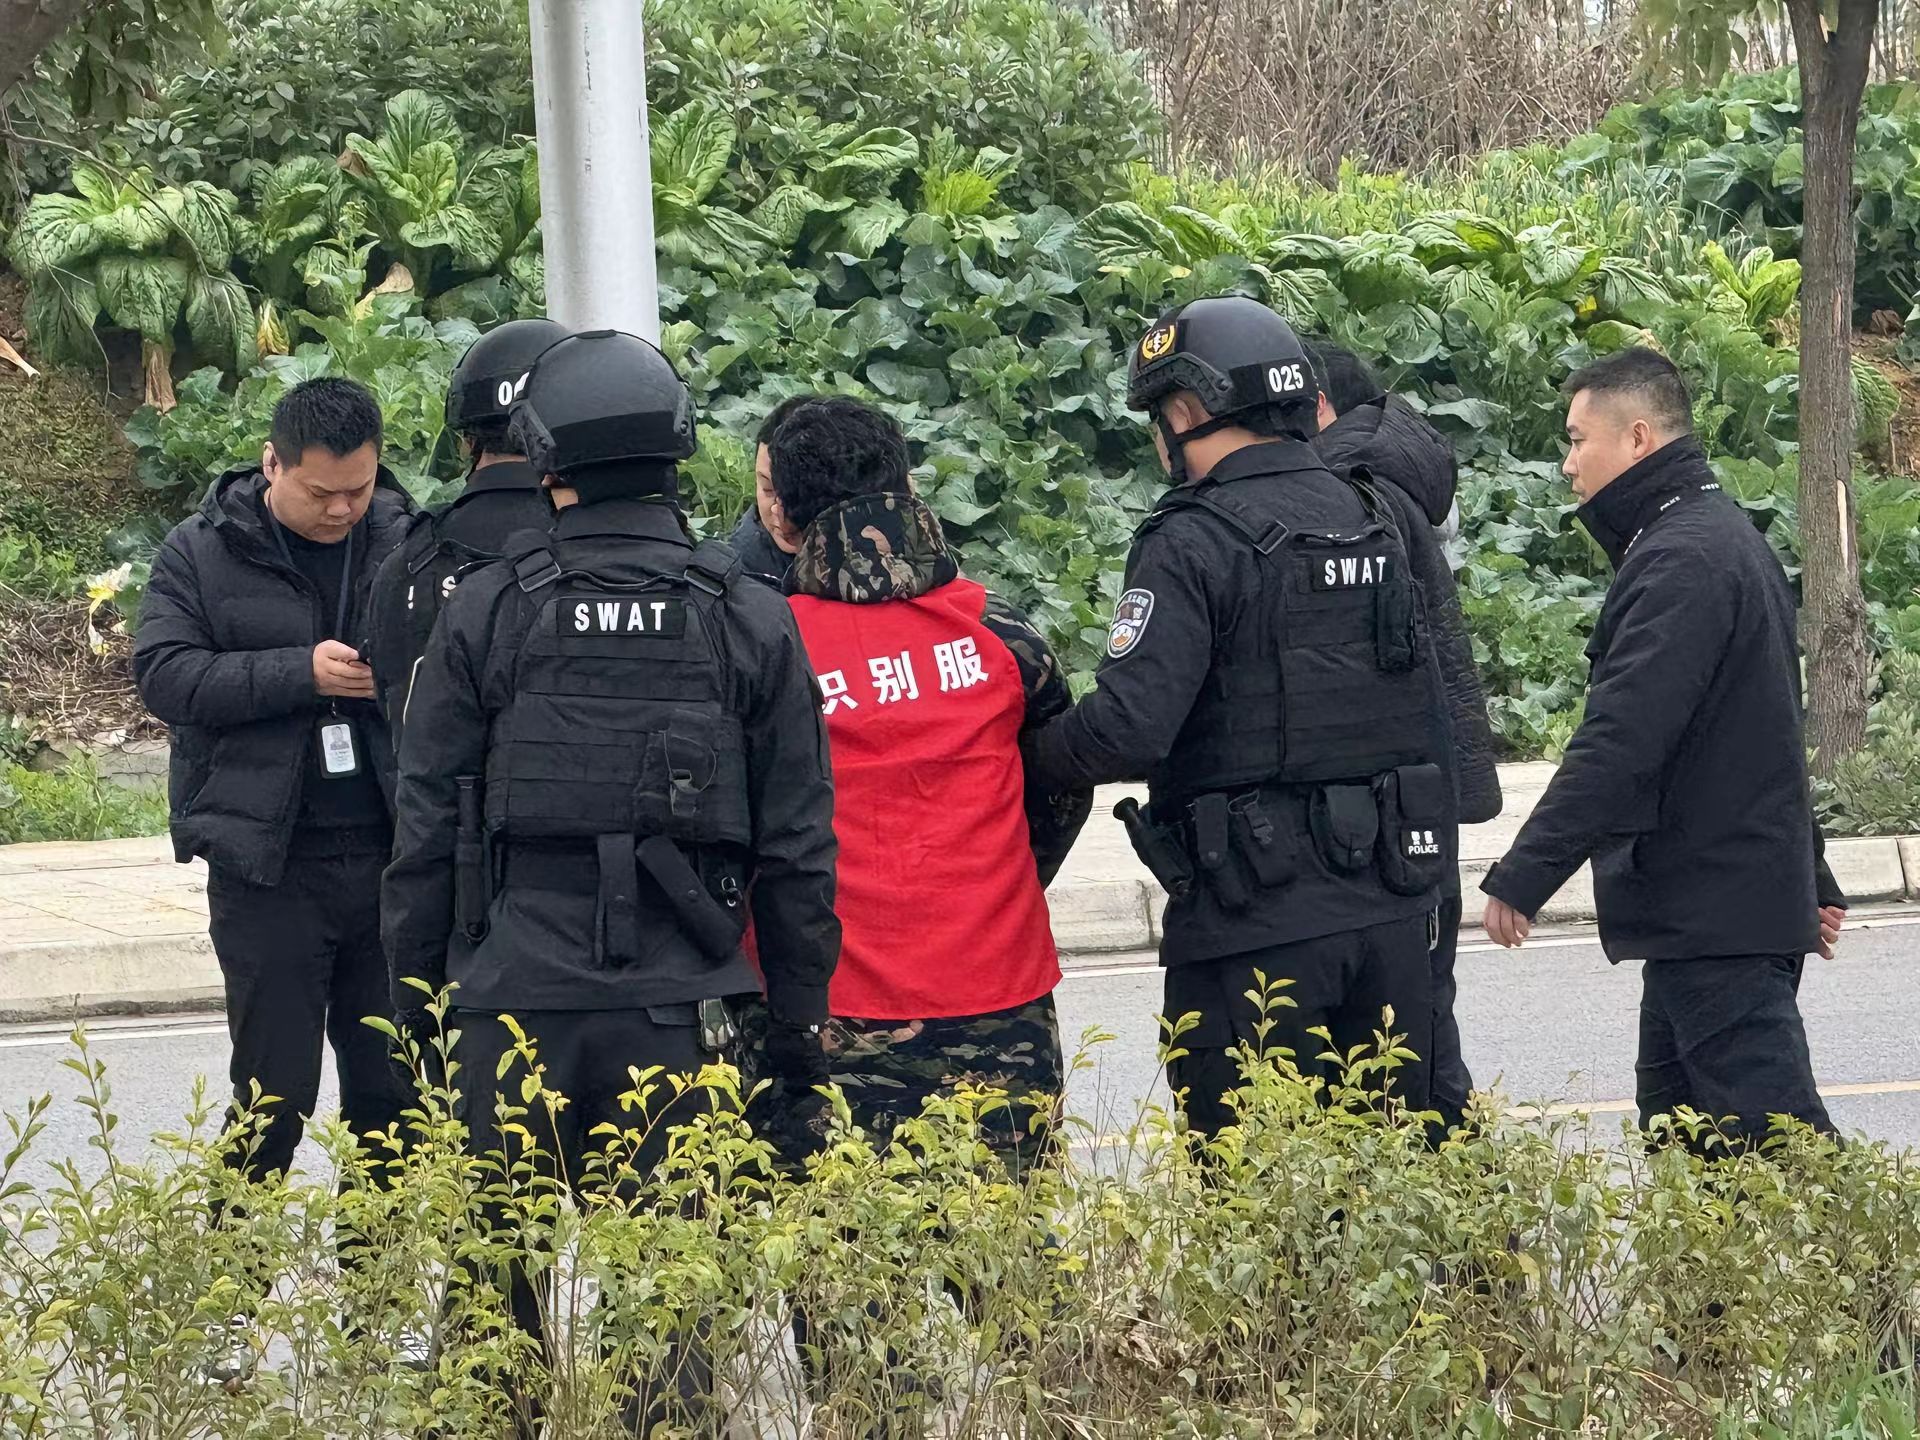 德阳警方悬赏通缉嫌疑人李小龙在广元被抓获 此前涉嫌杀害前妻潜逃